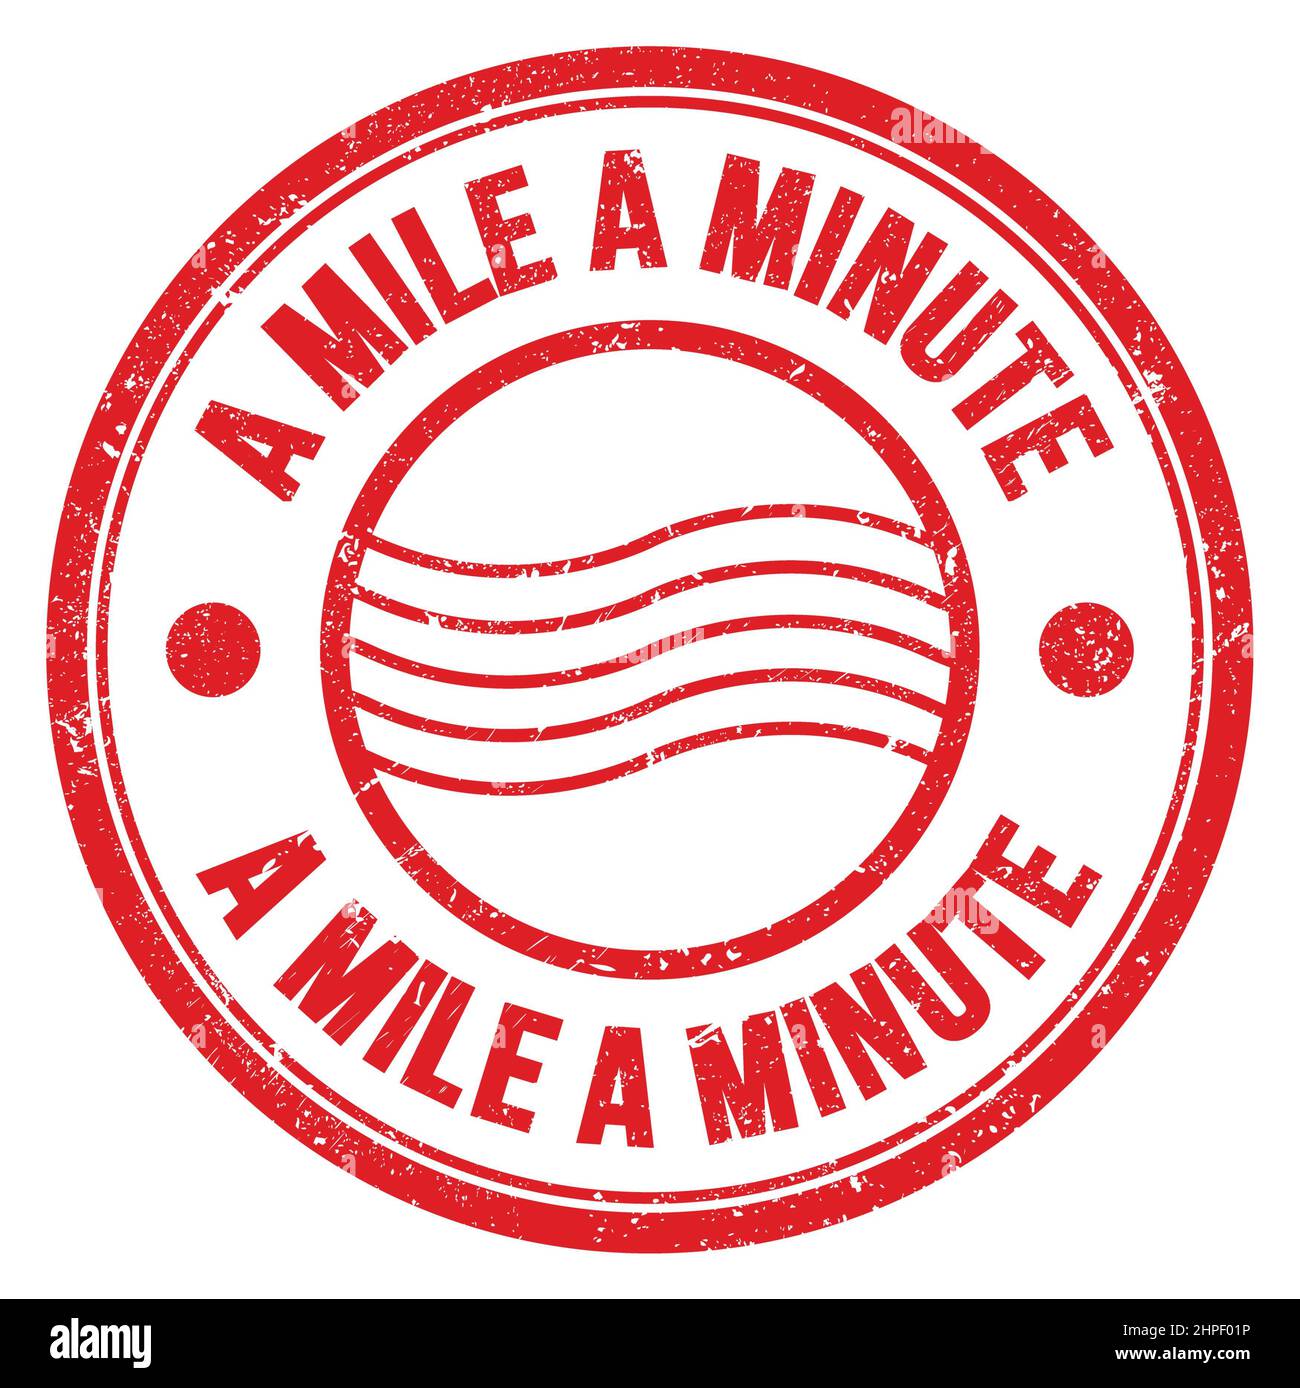 Eine MEILE Pro MINUTE Wort geschrieben auf roten runden Briefmarkenschild Stockfoto